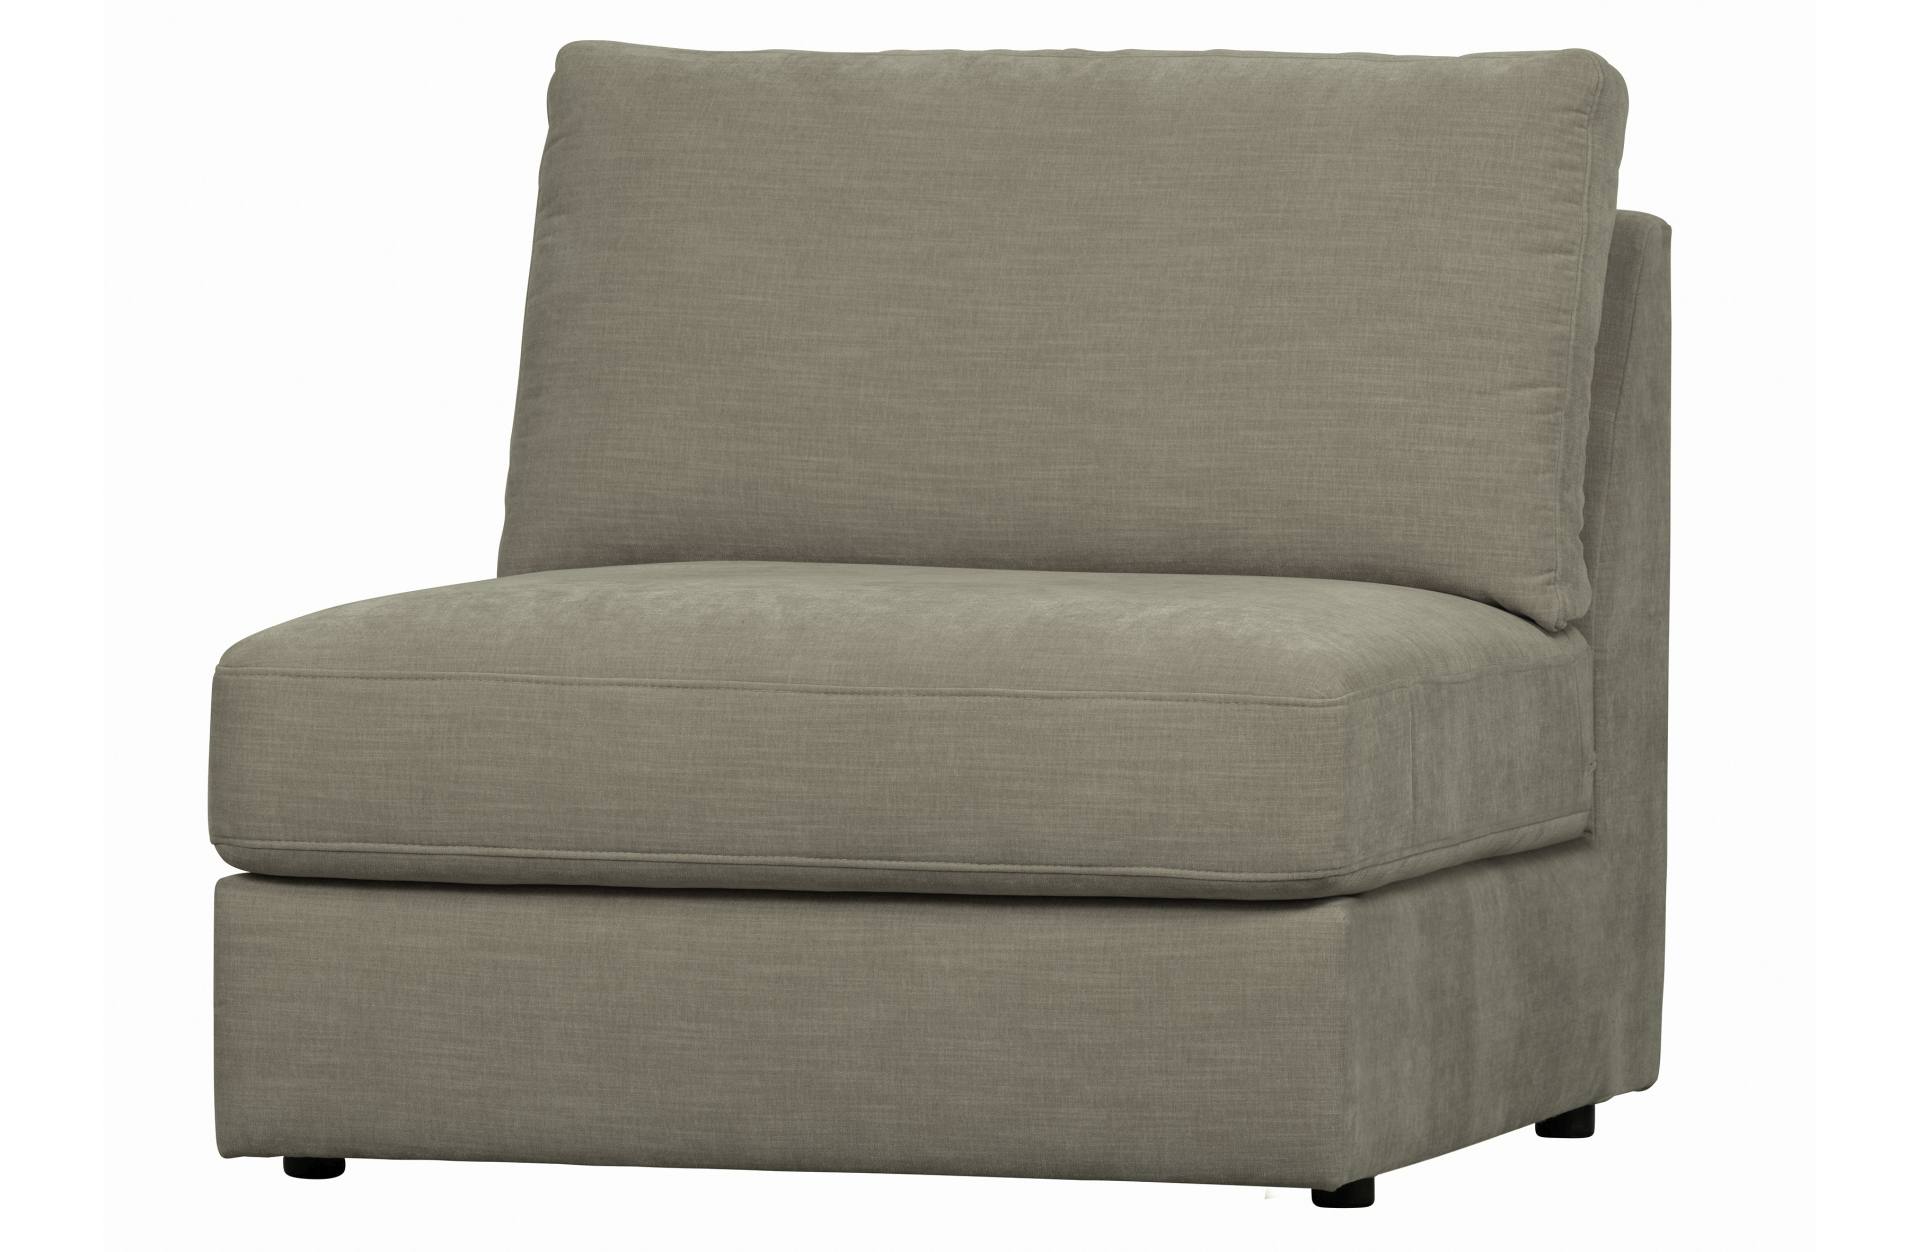 Das Modulsofa Family überzeugt mit seinem modernen Design. Das Seat Element wurde aus Gewebe-Stoff gefertigt, welcher einen einen grauen Farbton besitzen. Das Gestell ist aus Metall und hat eine schwarze Farbe. Das Element hat eine Sitzhöhe von 44 cm.